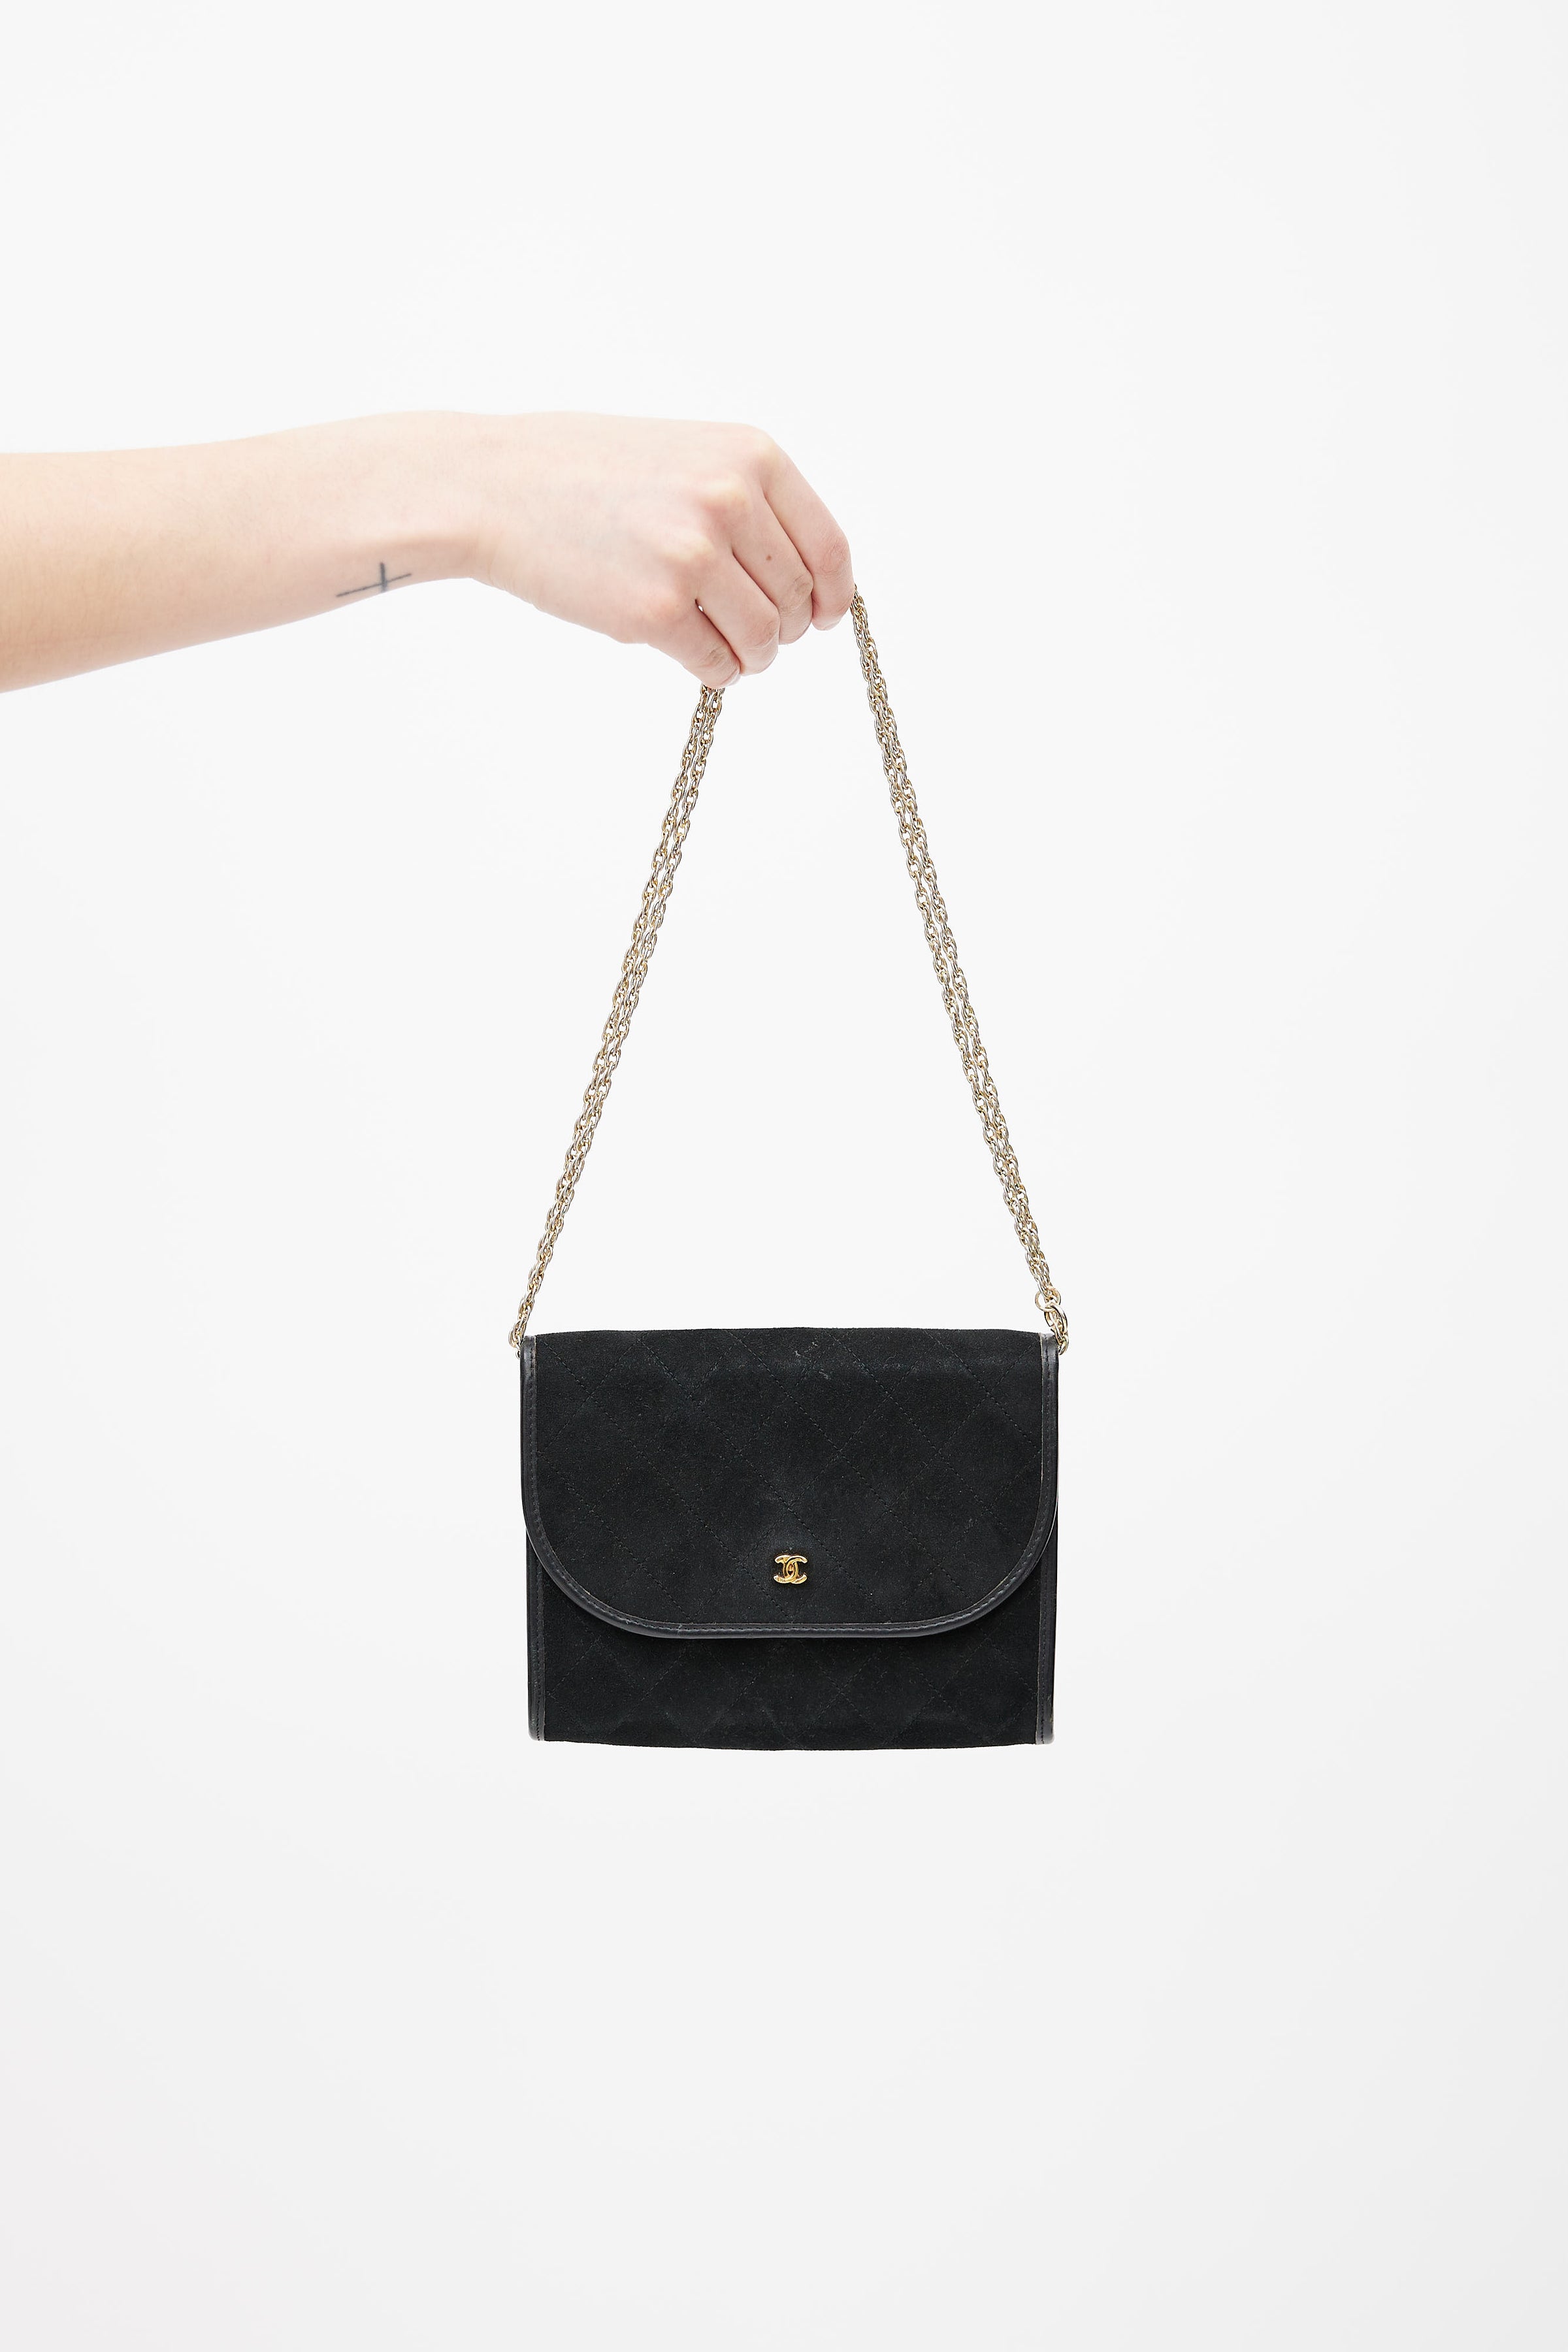 Chanel // Vintage Black Quilted Shoulder Bag – VSP Consignment